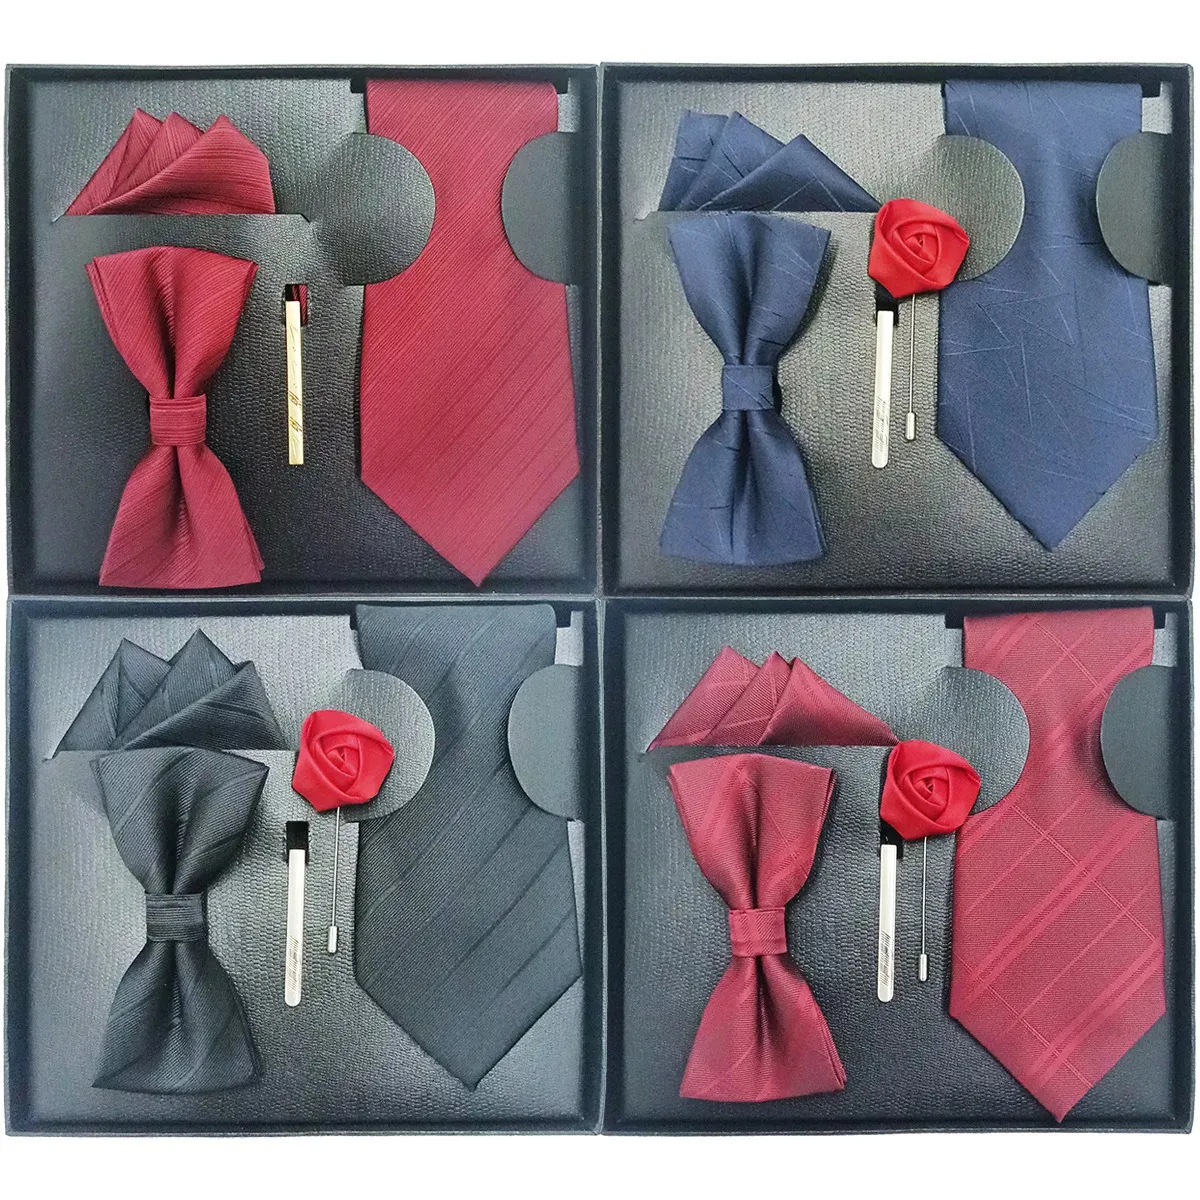 Caja de regalo de bufanda de bufanda de corbata formal para hombres